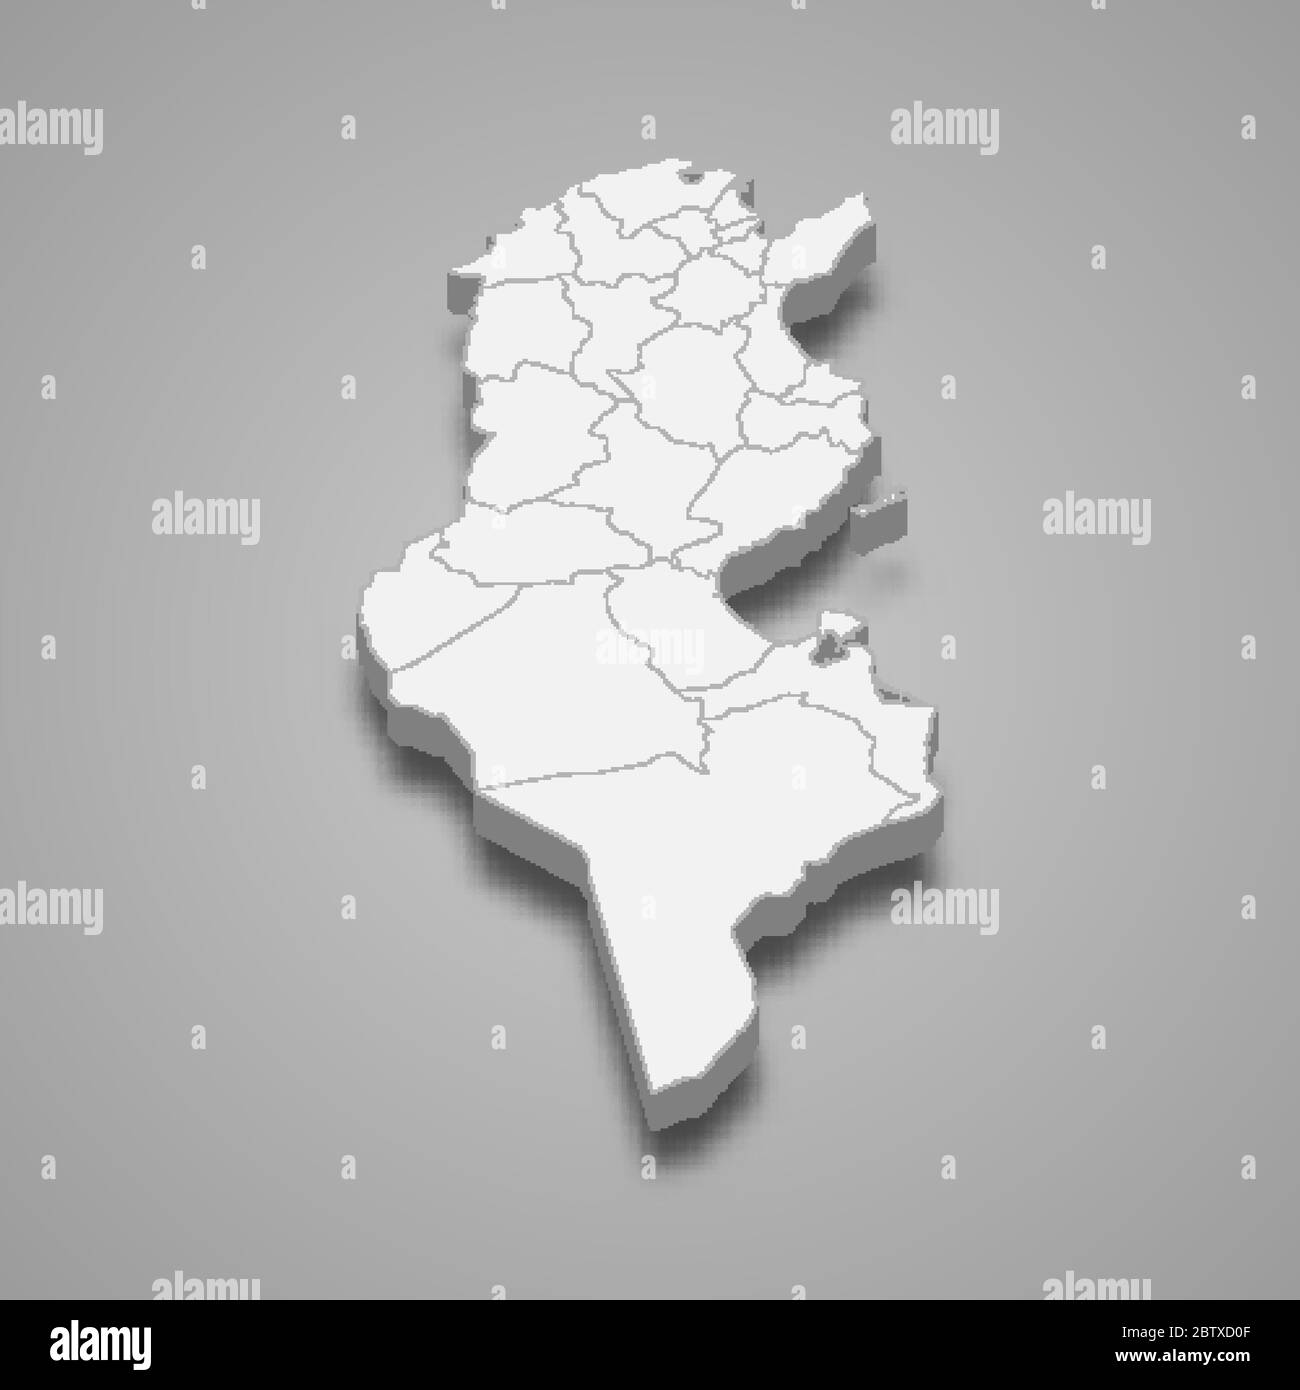 Carte 3d de la Tunisie avec frontières des régions Illustration de Vecteur